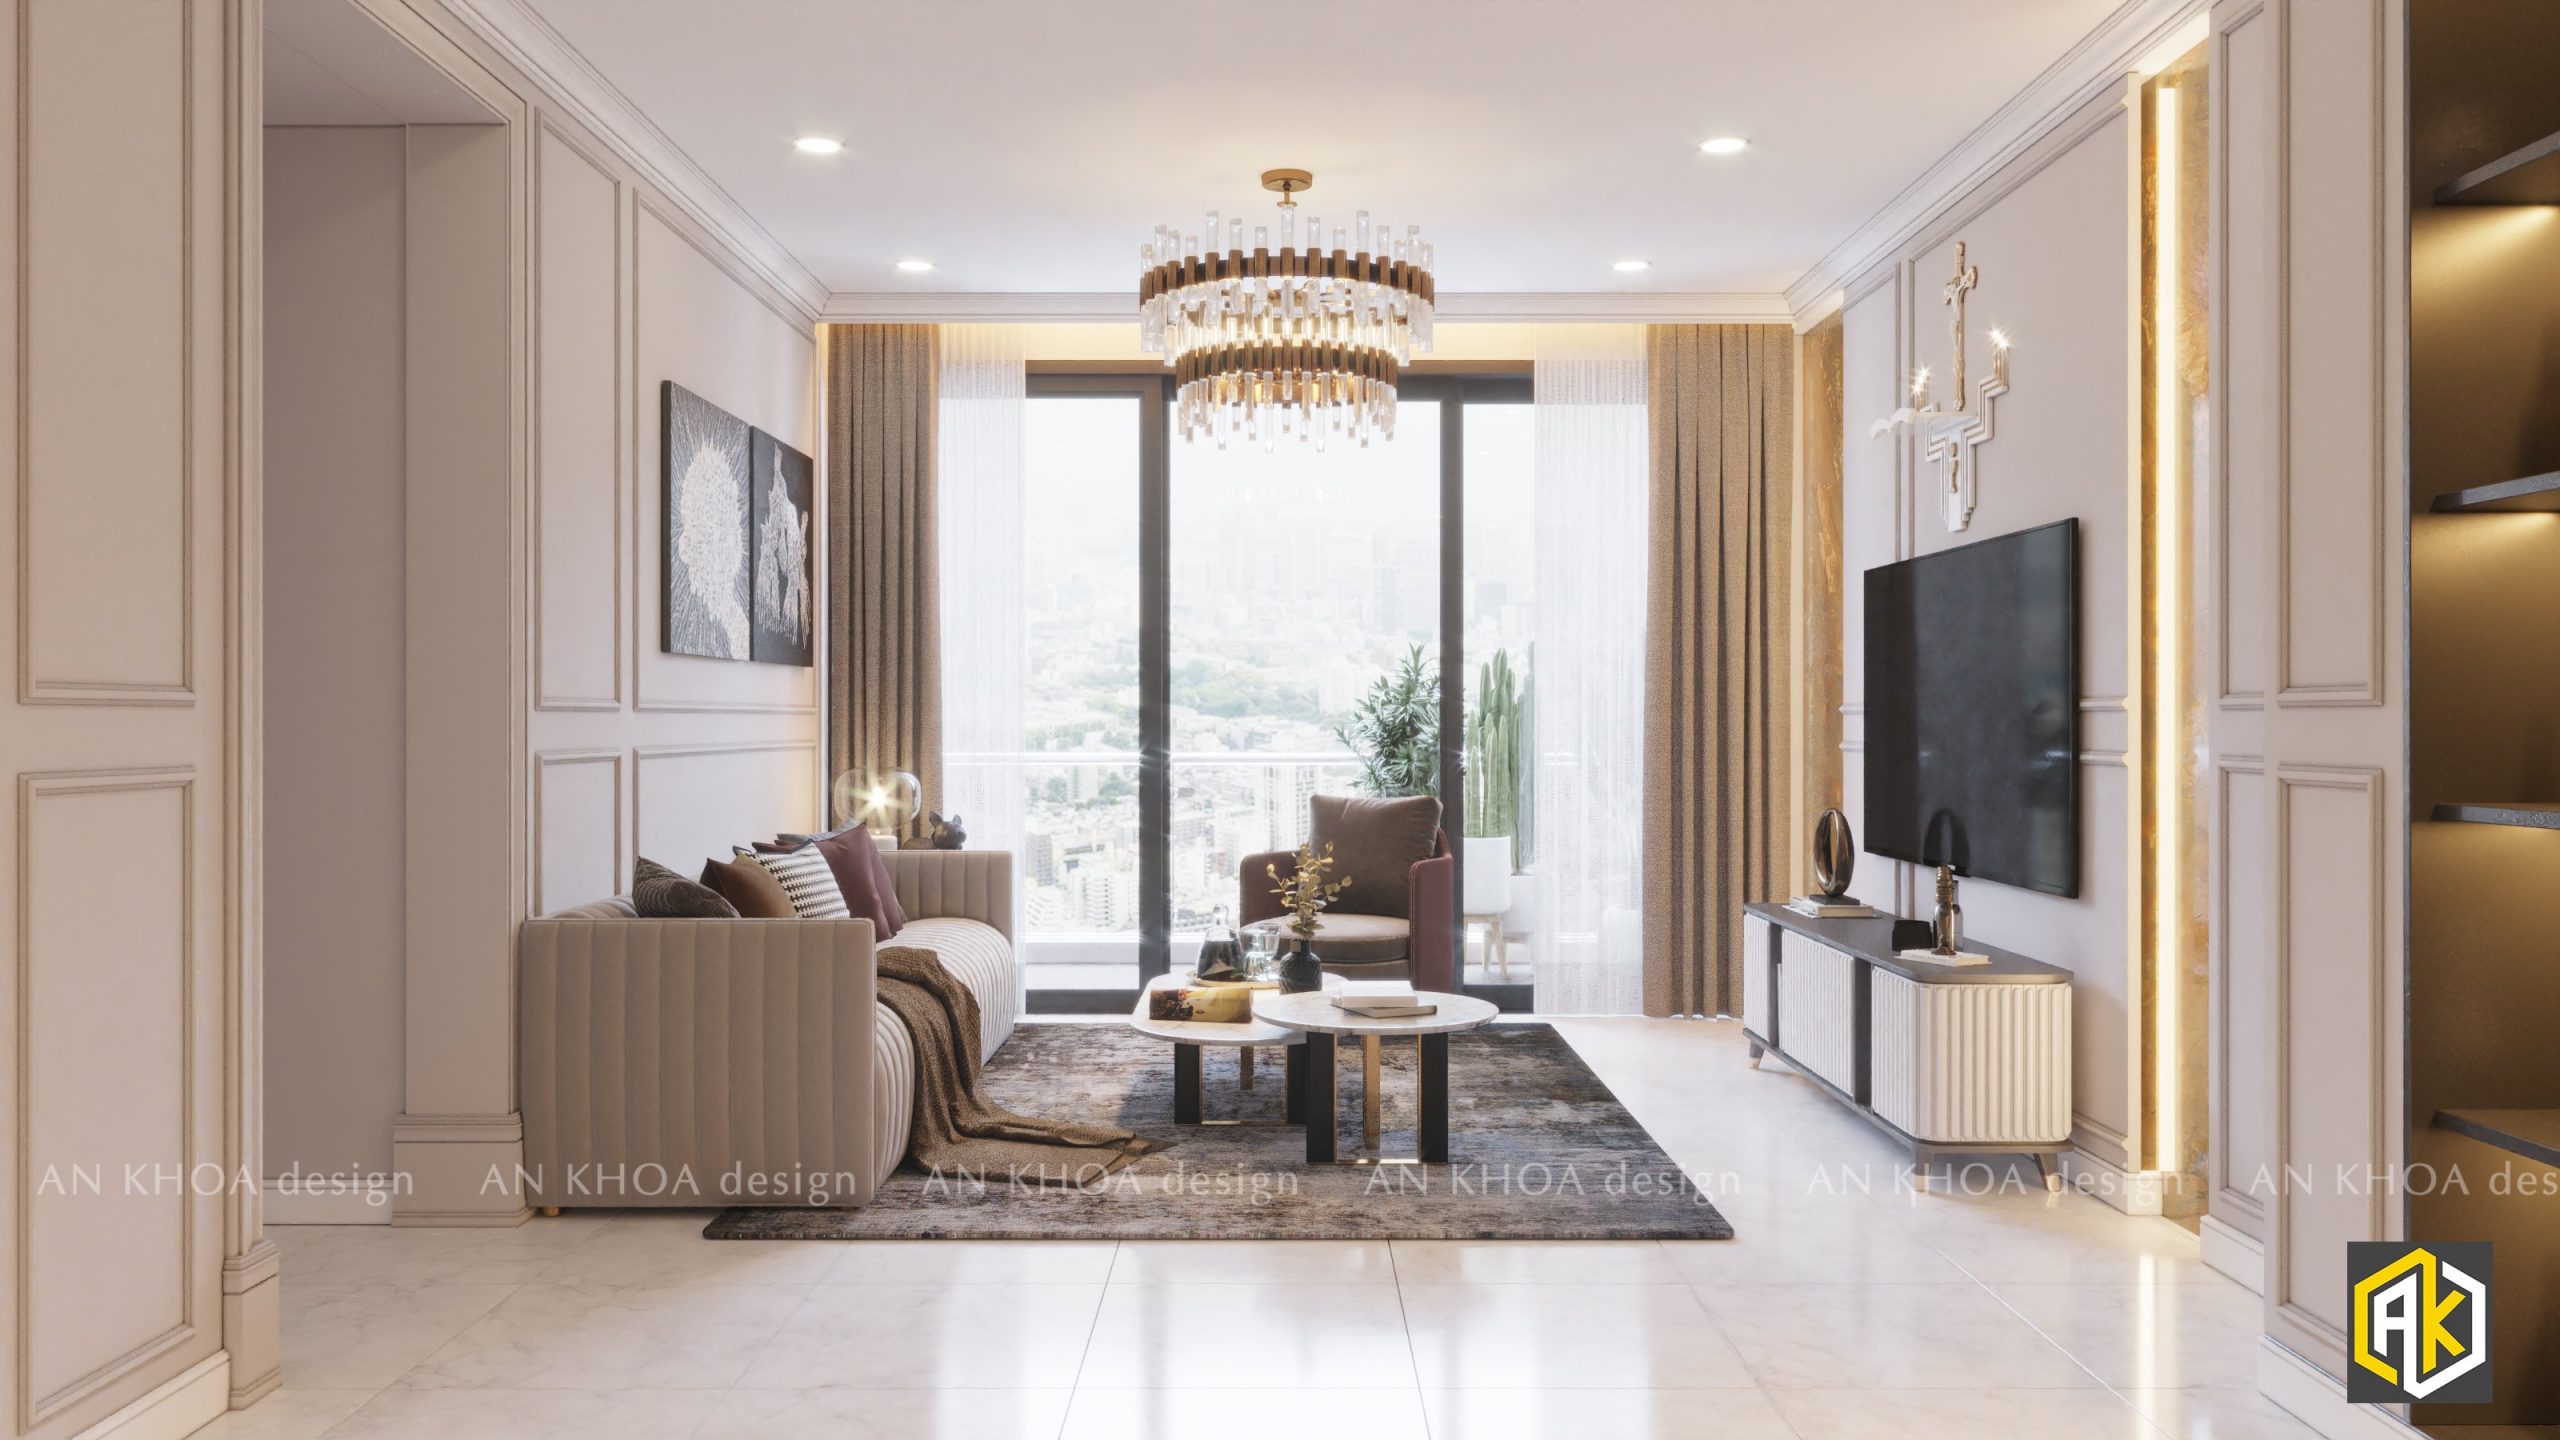 Thiết kế nội thất phòng khách chung cư theo phong cách tân cổ điển